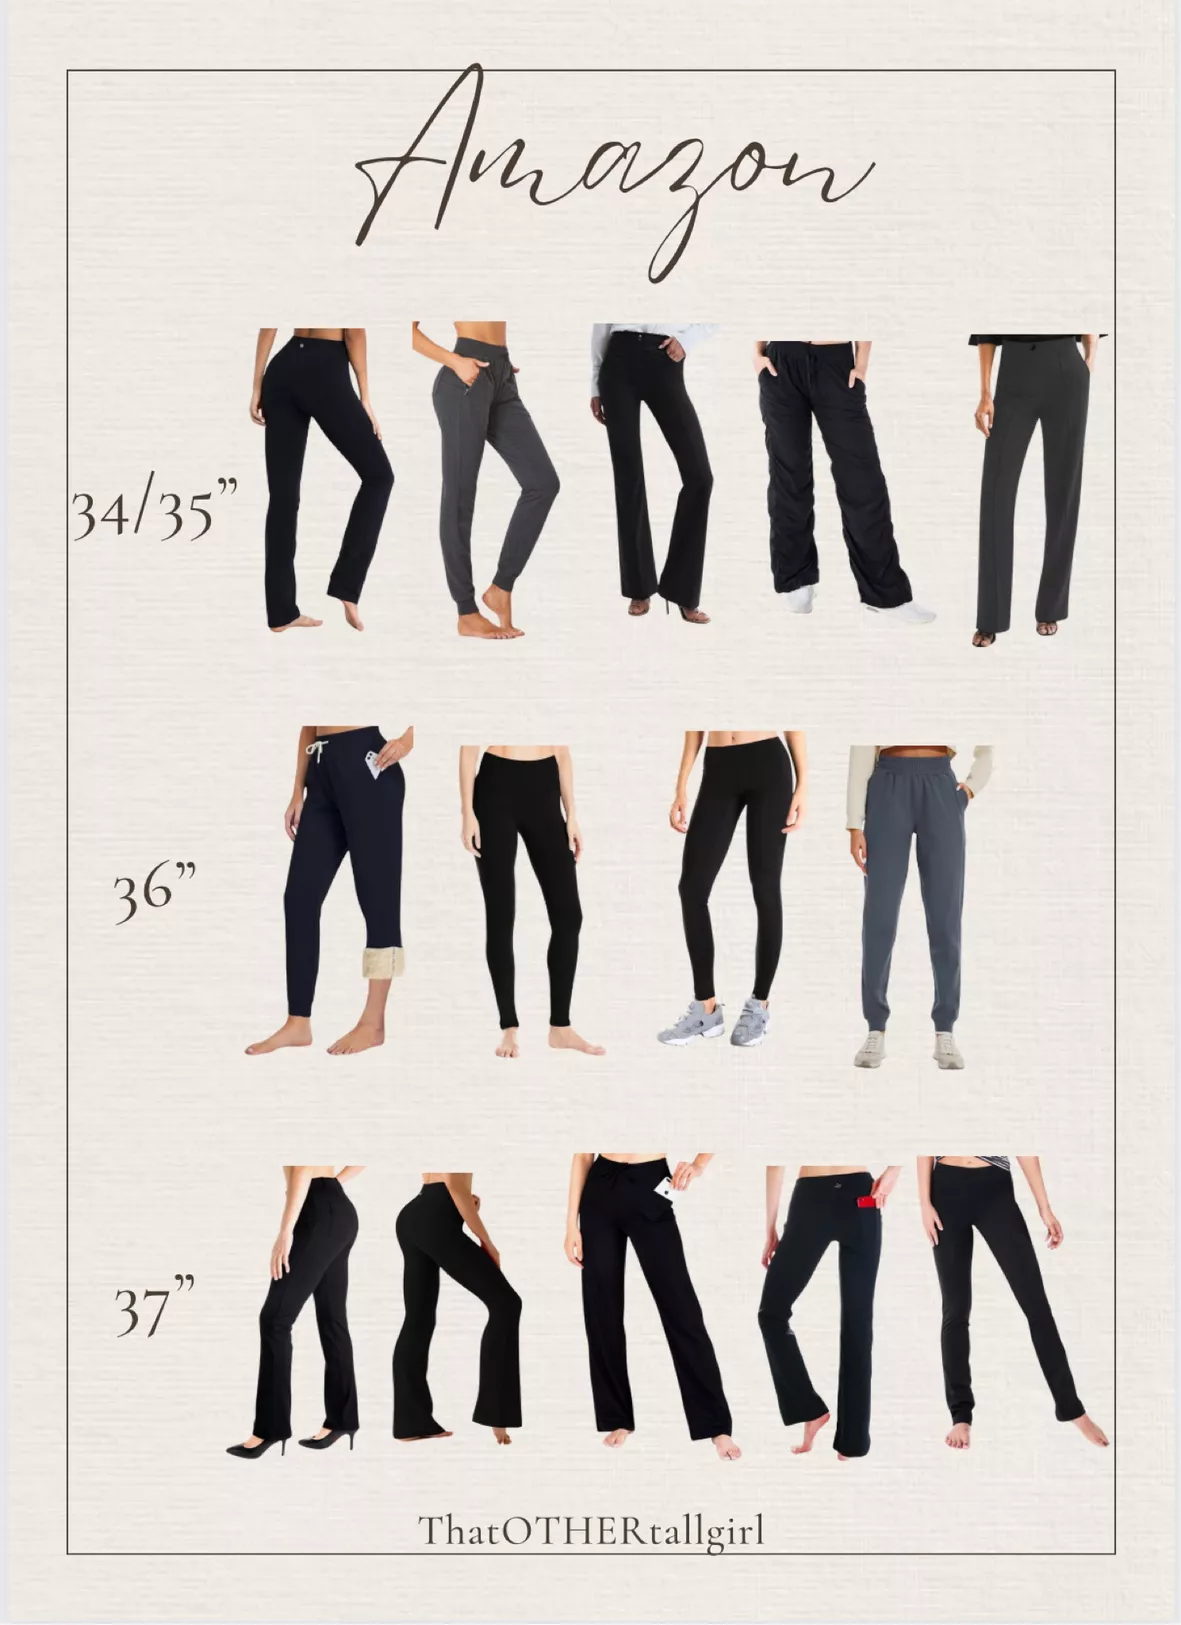 Yogipace,5 Pockets,Tall Womens 31/34/36 Extra Long Yoga